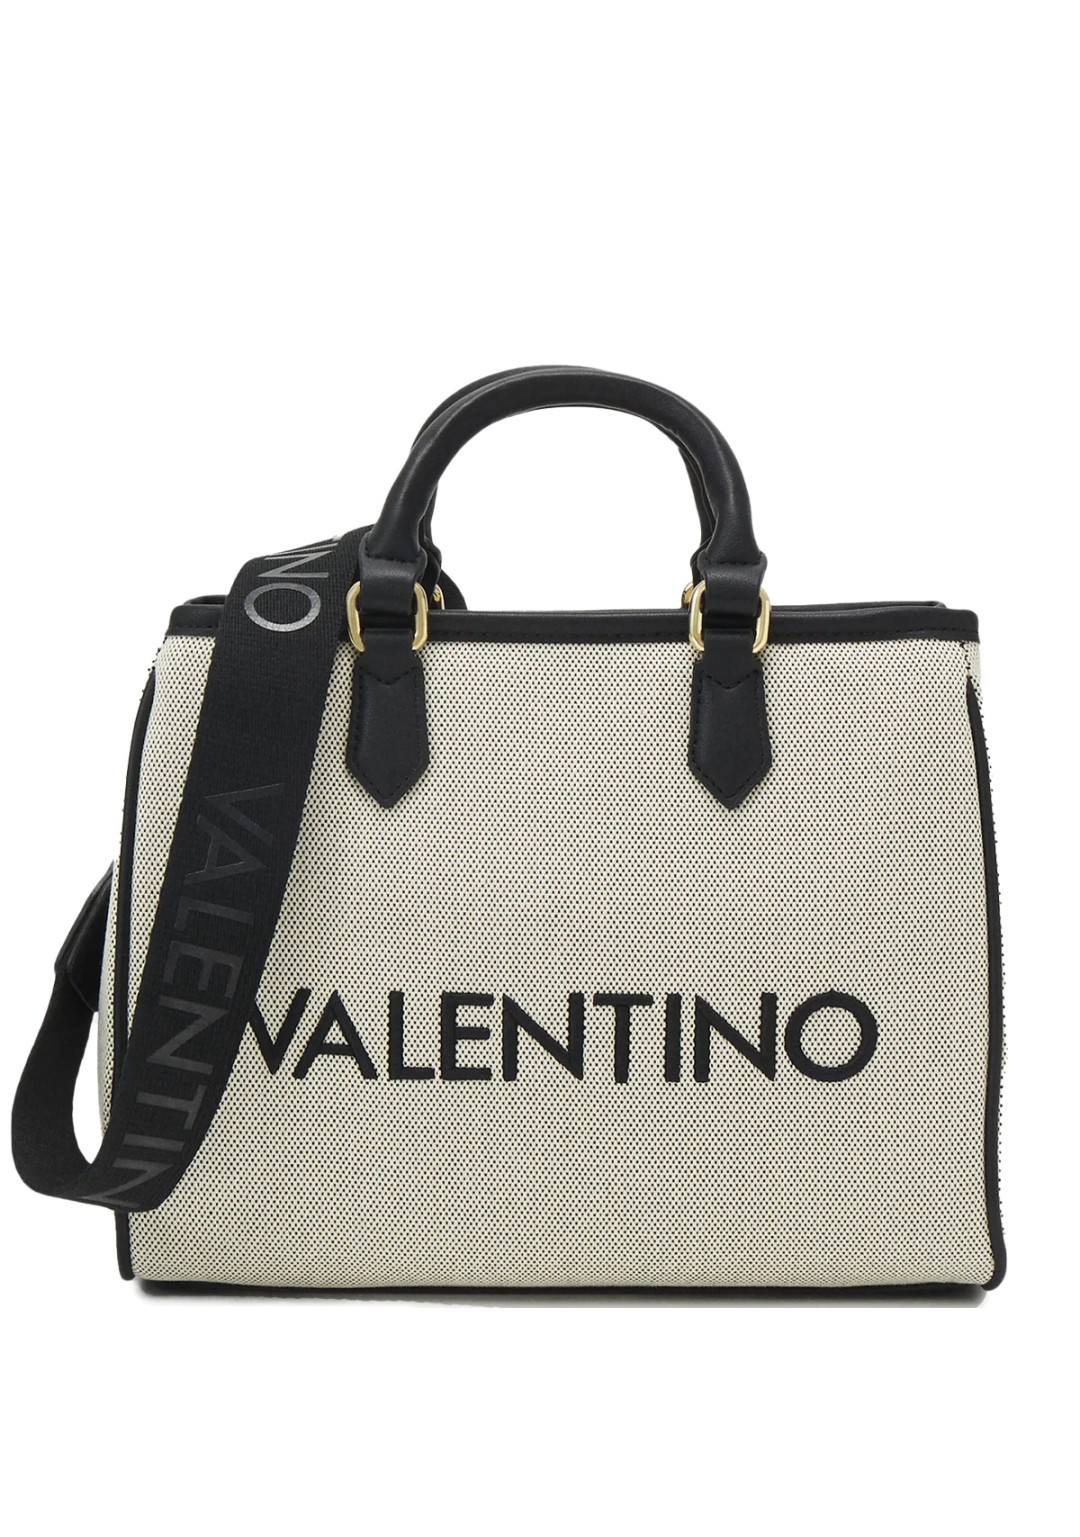 Valentino - Borsa Media - Donna - Chelsea Re T02